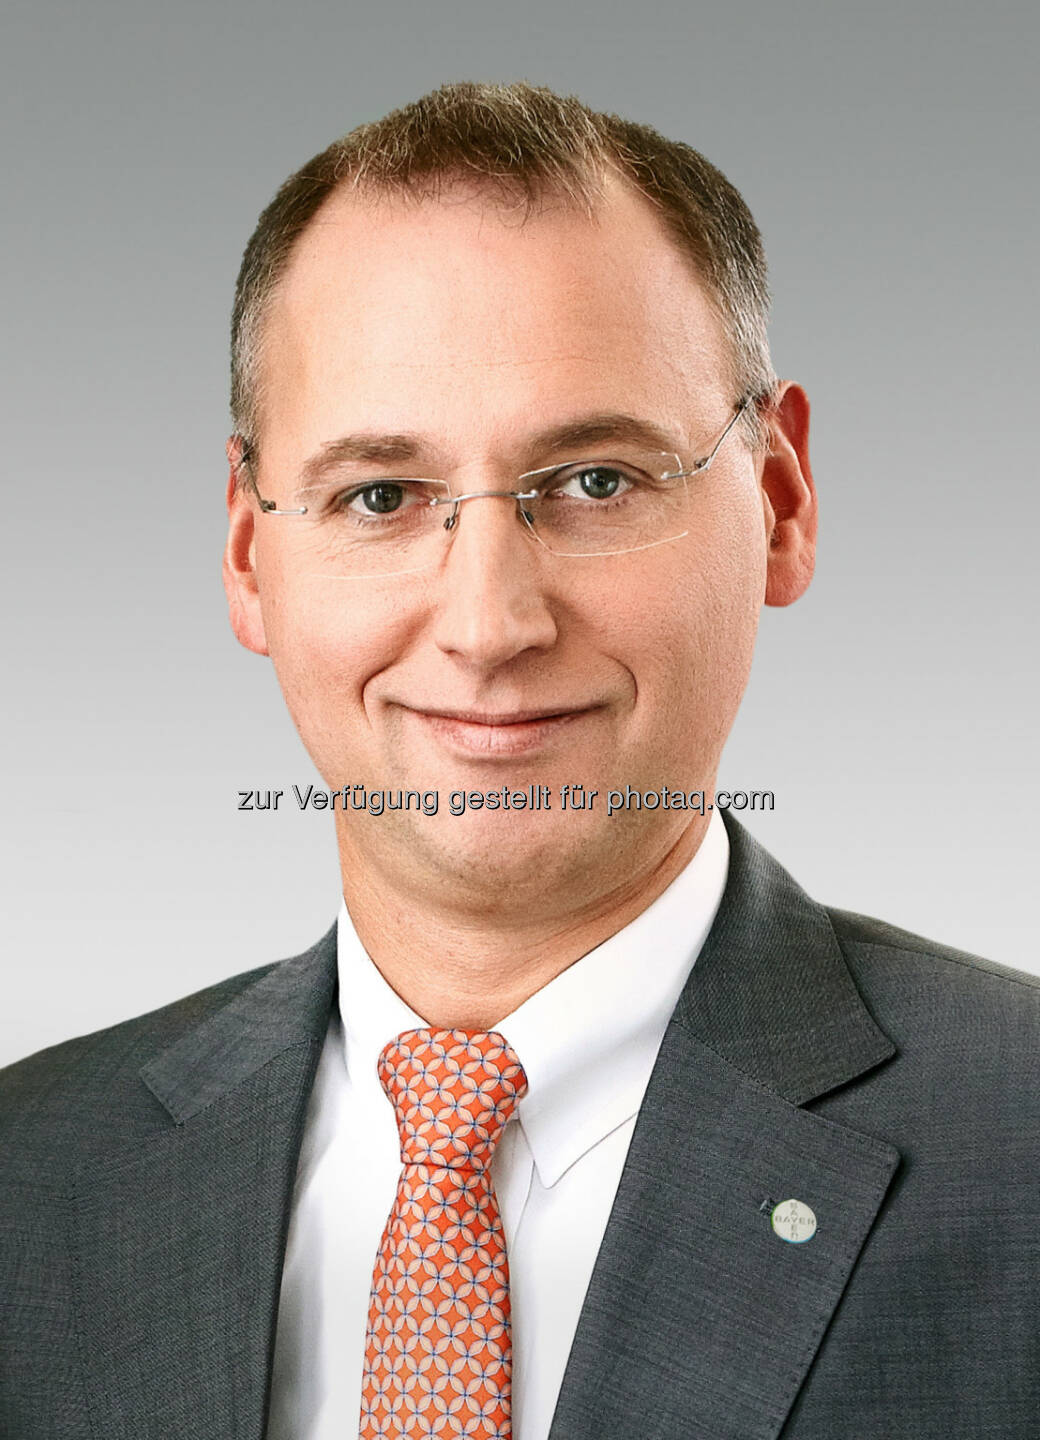 Werner Baumann, Finanzvorstand der Bayer AG übernimmt die Führung des Teilkonzerns Bayer HealthCare.